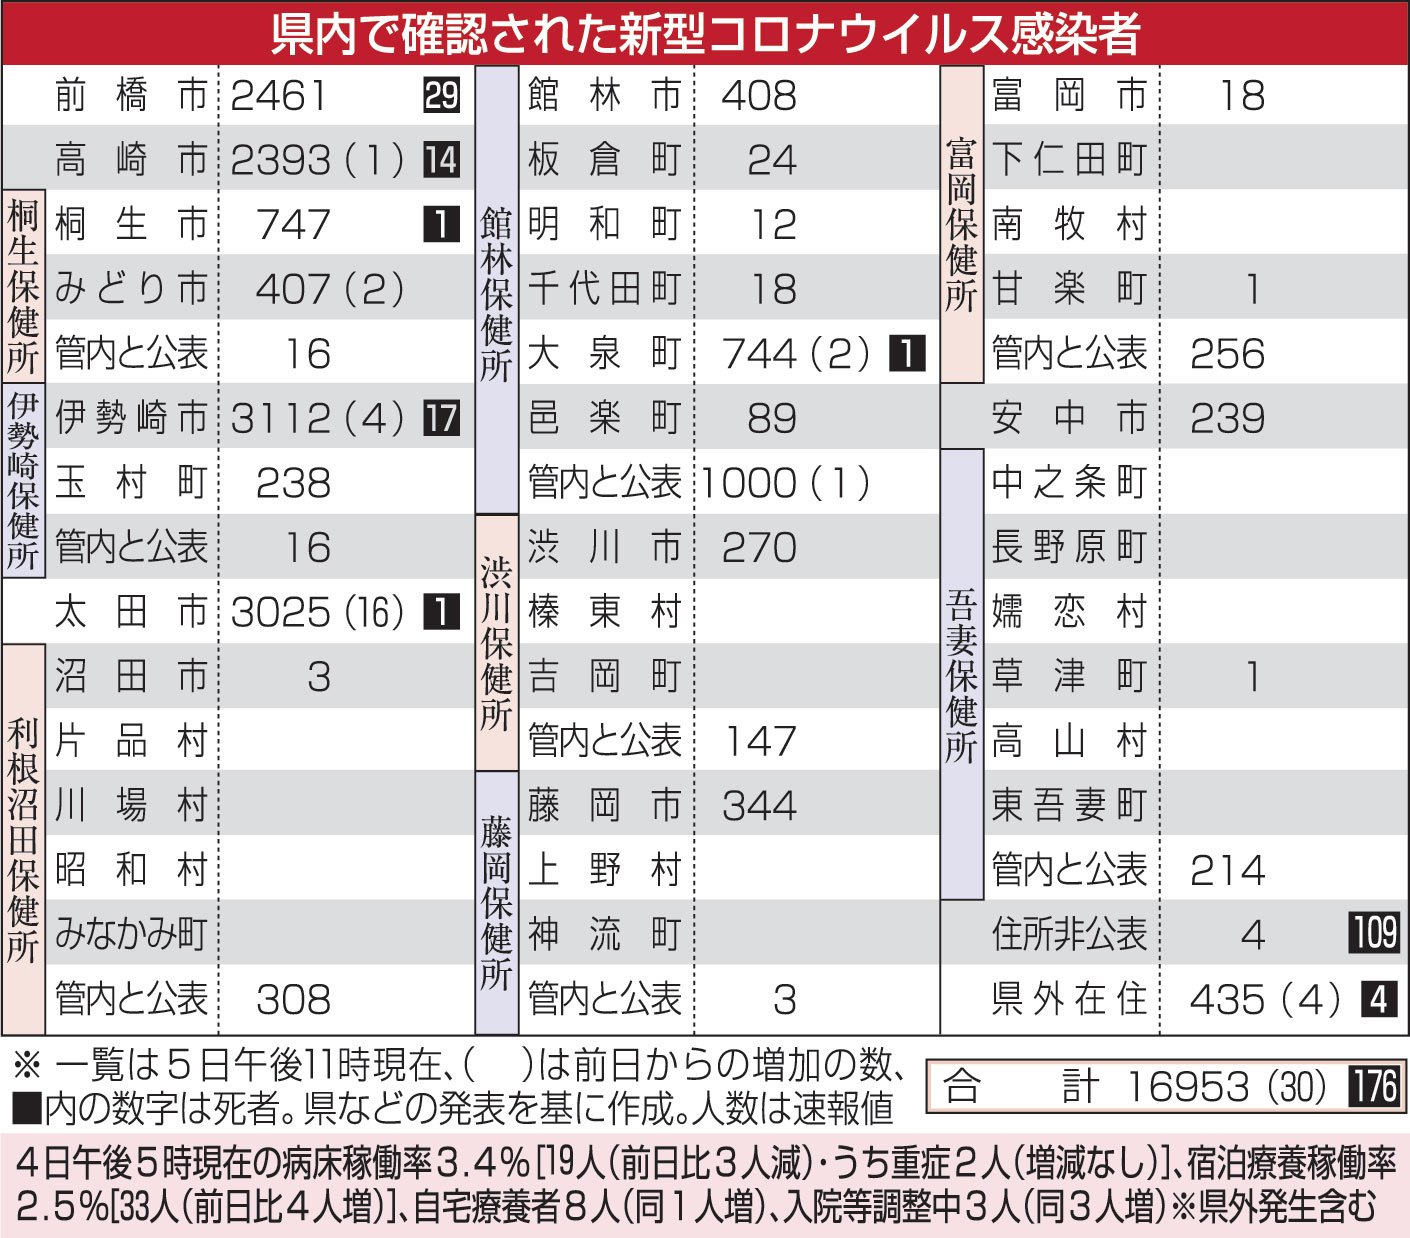 新型コロナ 新規陽性30人 全国で最多 うち26人が太田の工場クラスター 上毛新聞社のニュースサイト